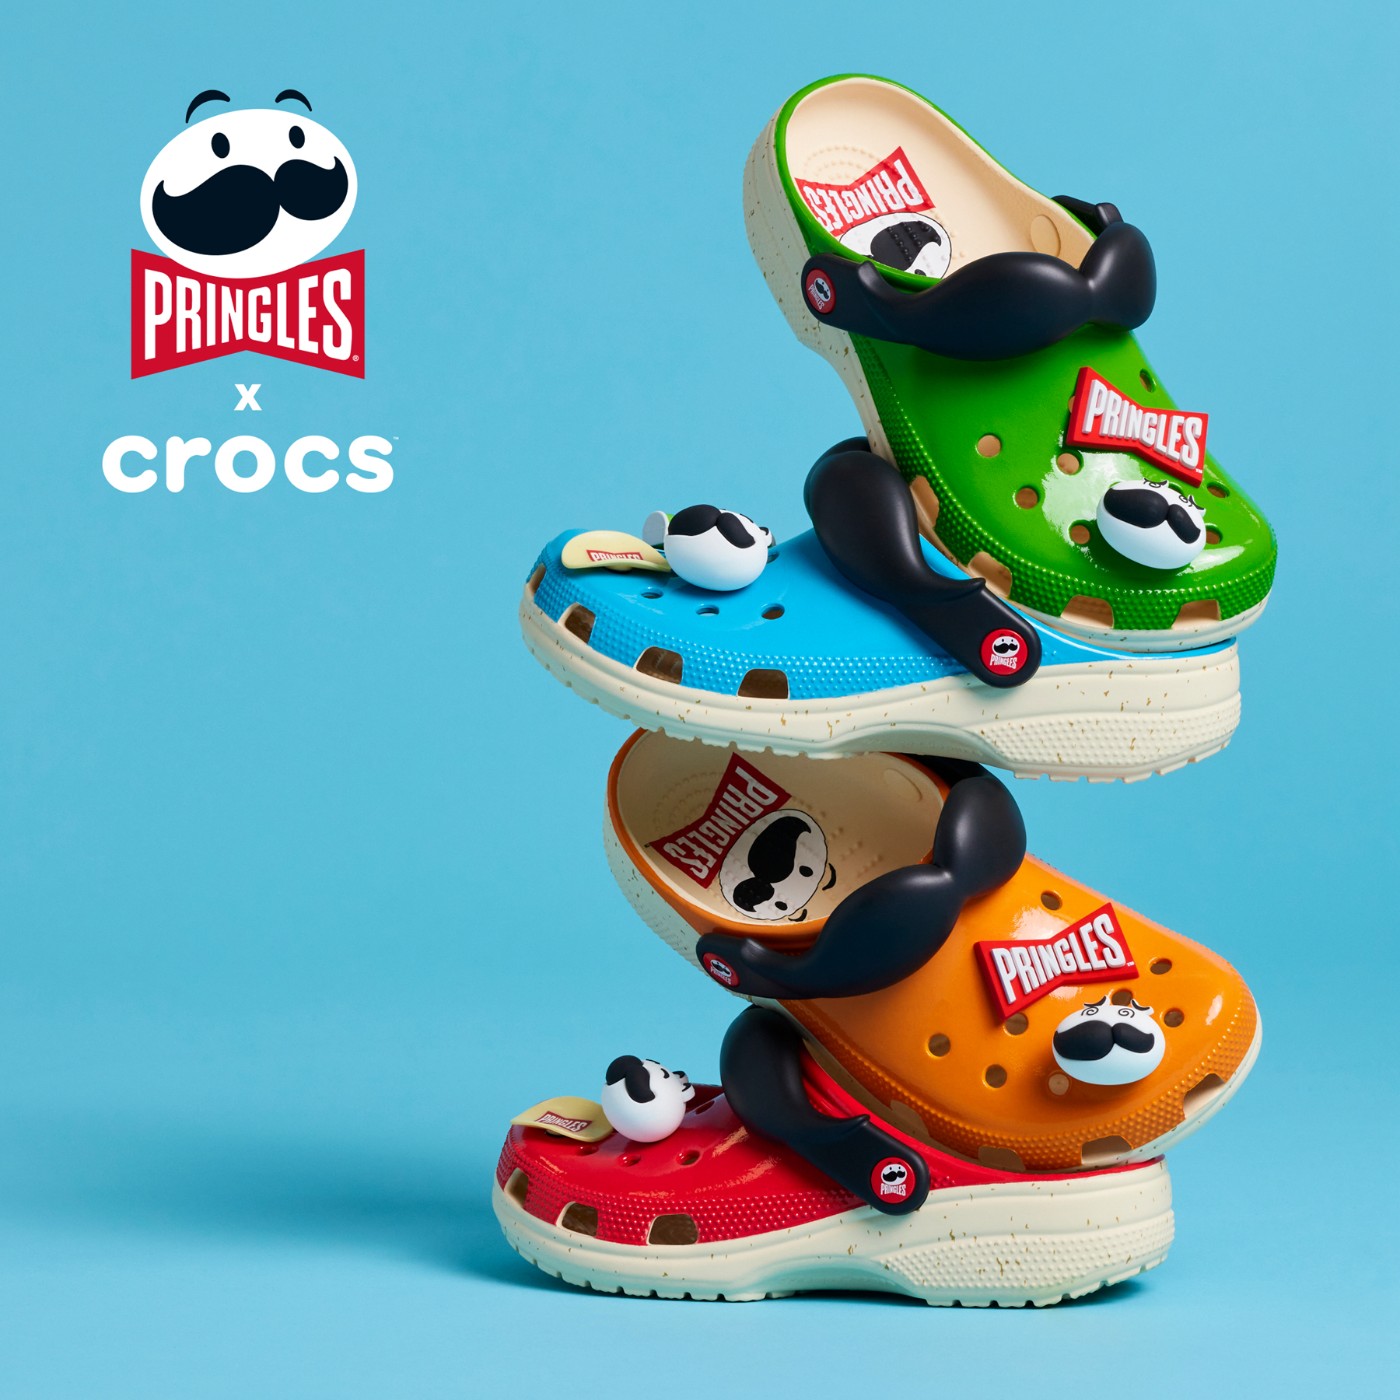 Crocs,品客,Pringles  来桶什么味的薯片？品客 x Crocs 新鞋看馋了！